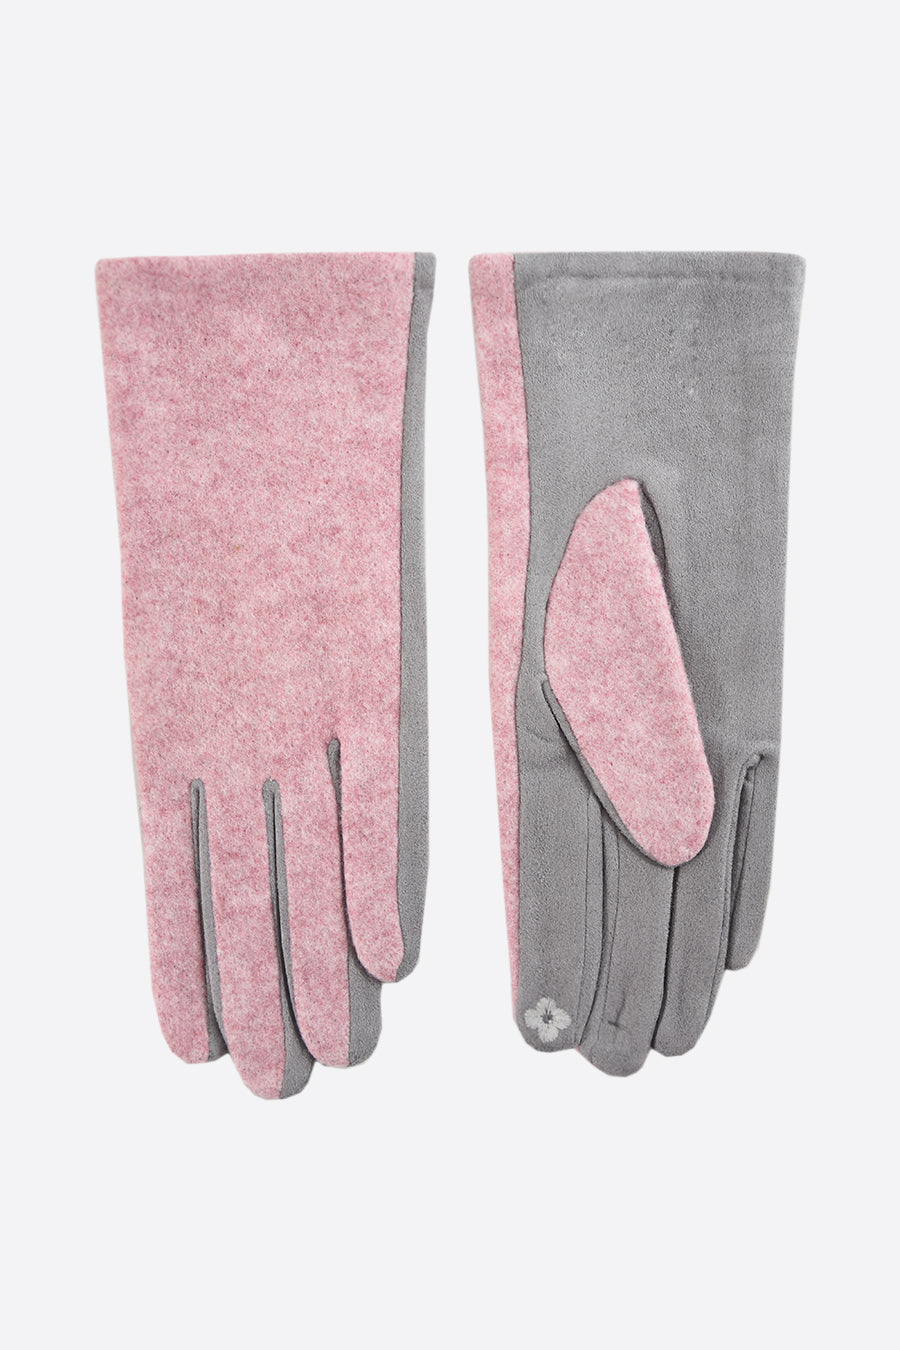 Stoffige roze middelgrijze tweekleurige handschoenen